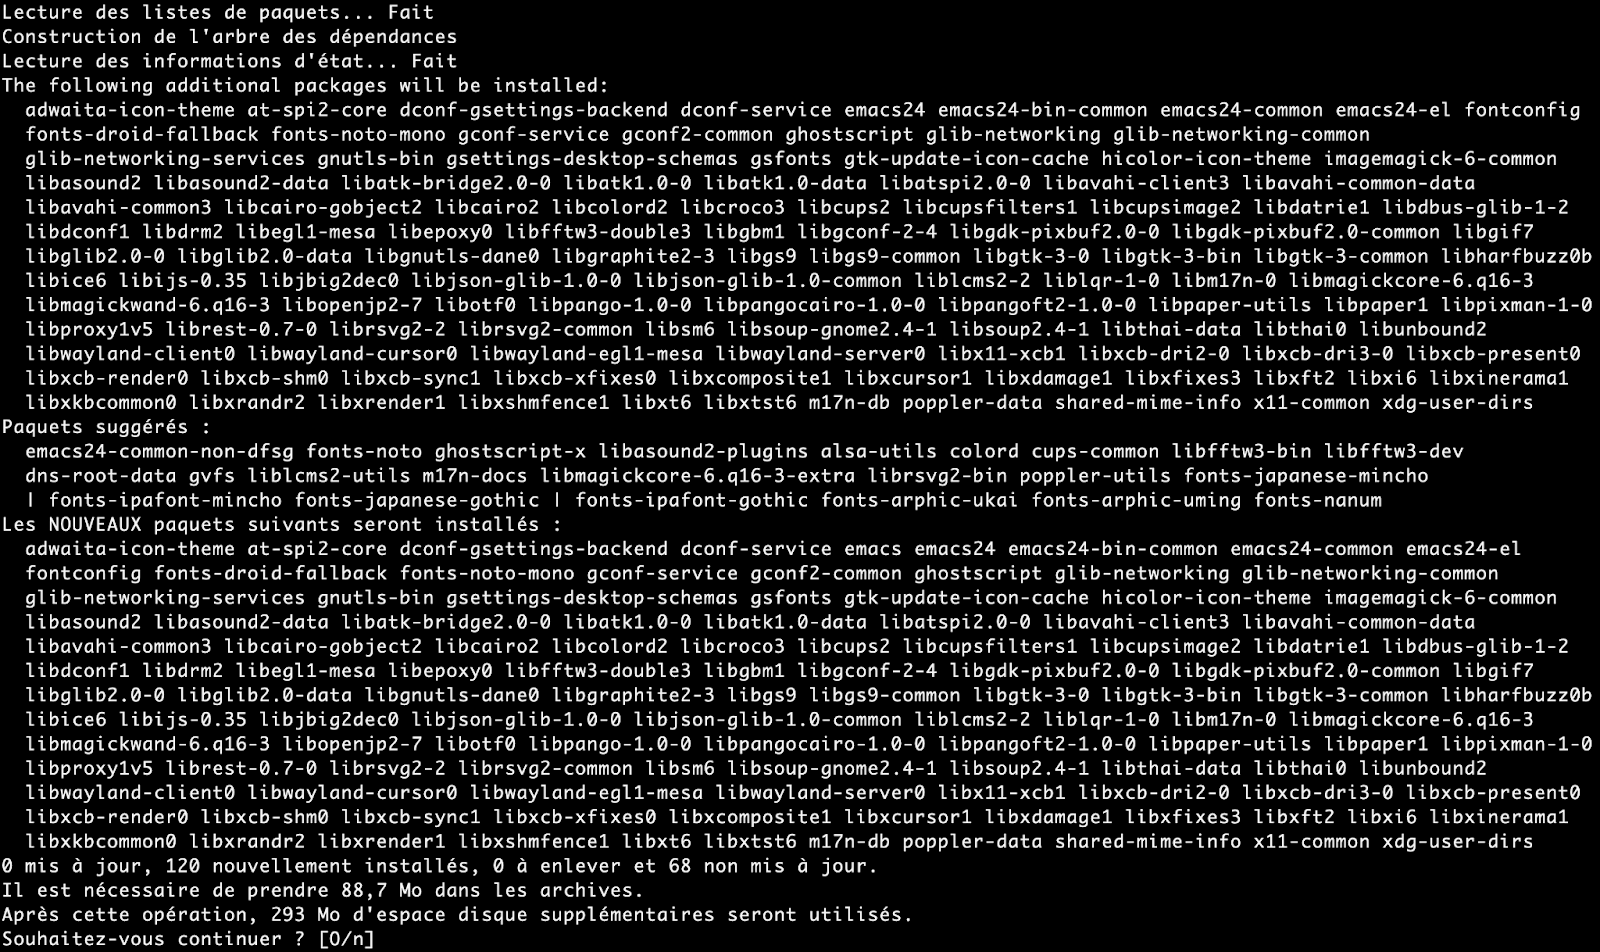 Liste des dépendances pour une installation sur une Debian 10 minimale